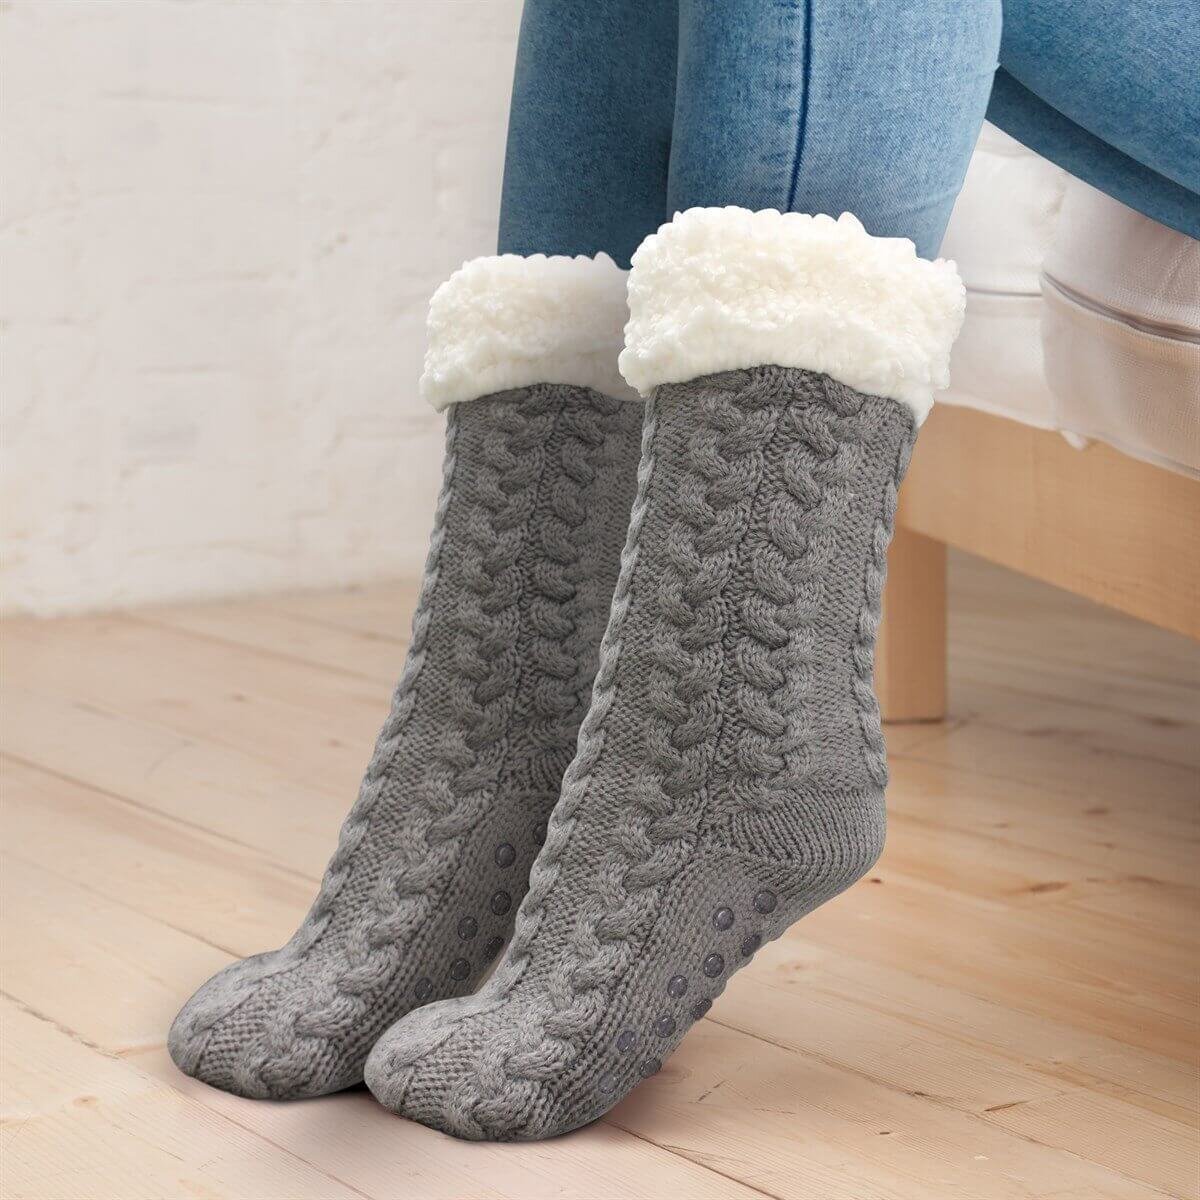 inspire-uplift-sherpa-lined-slipper-socks-gray-sherpa-lined-slipper-socks-13625061834851.jpg